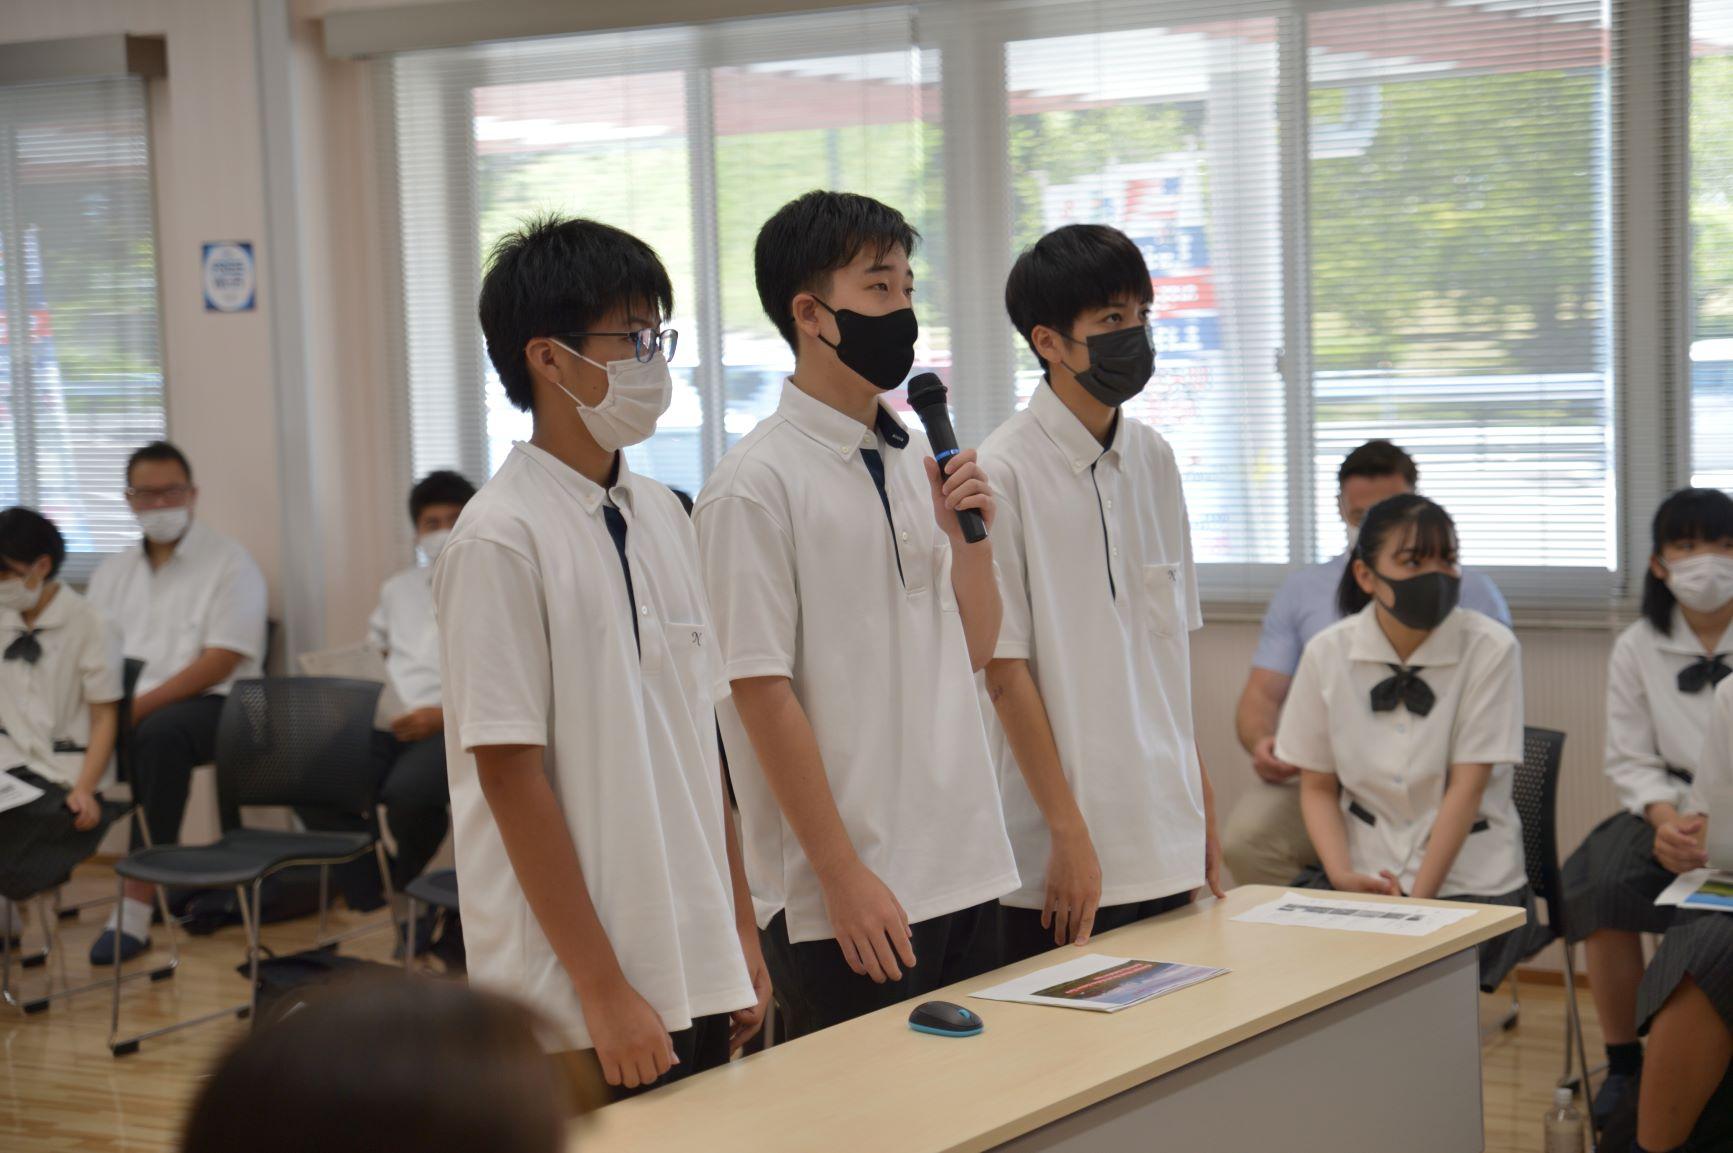 オンライン交流会にて、カメラに向かって話をする仁賀保高校の男子生徒3名の写真